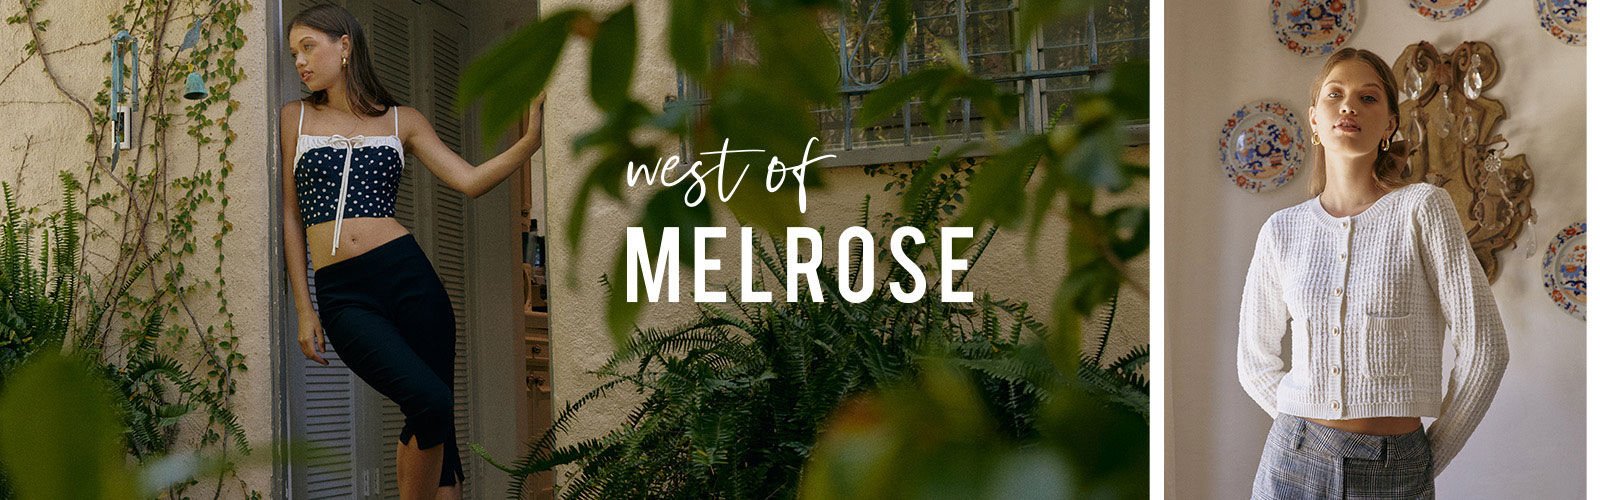 West of Melrose